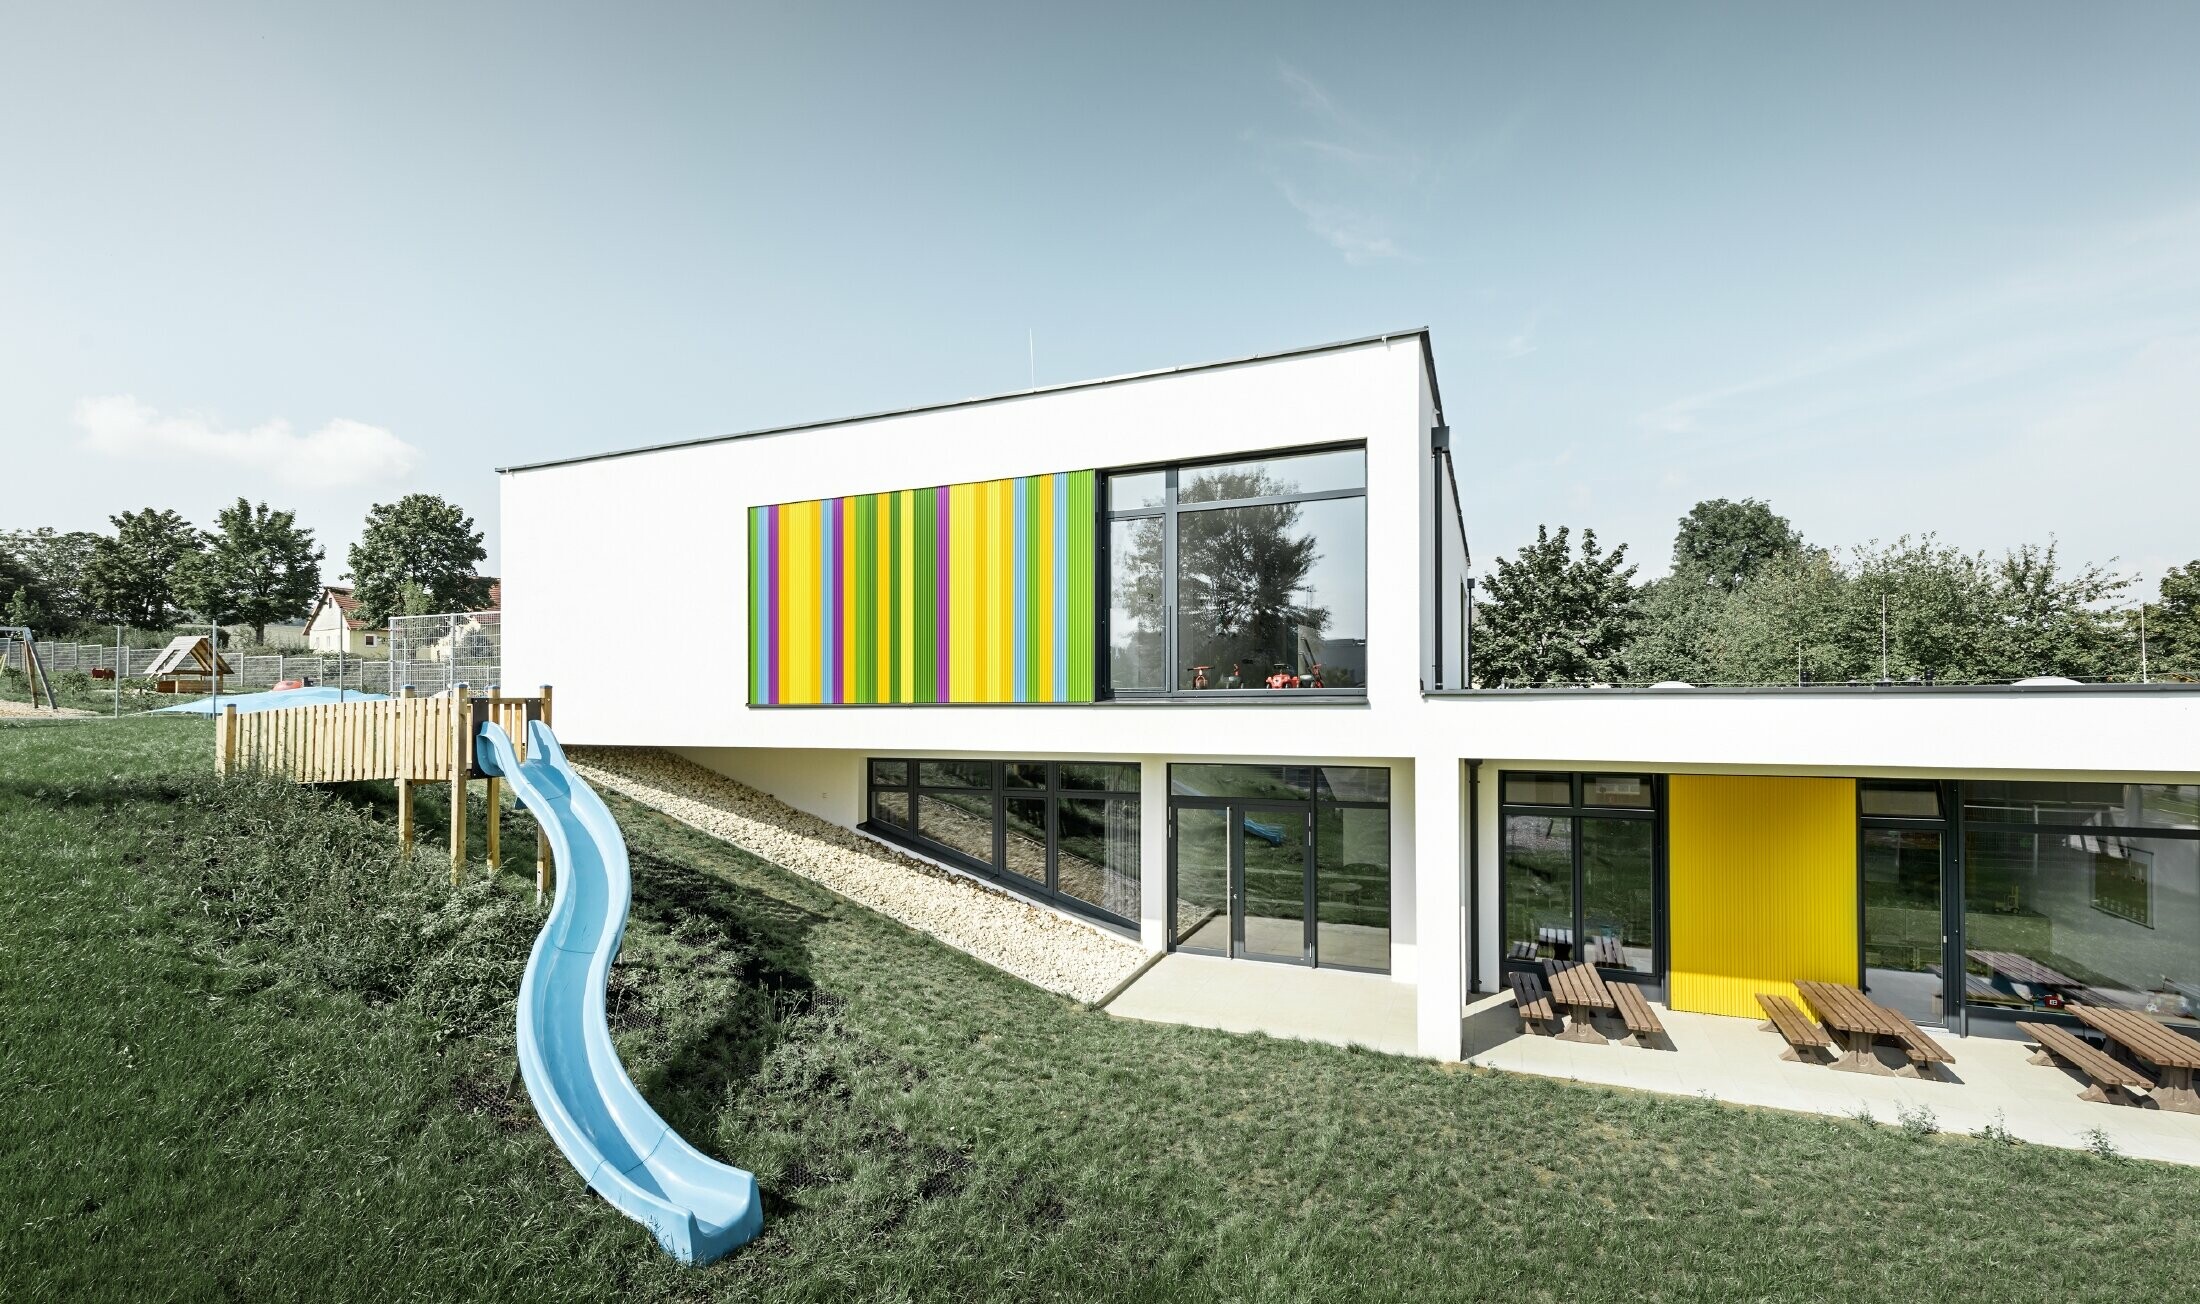 Zadní pohled na mateřskou školu v Hargelsbergu s fasádou z barevného Zackenprofil v barvách žlutá, zelená, fialová a modrá